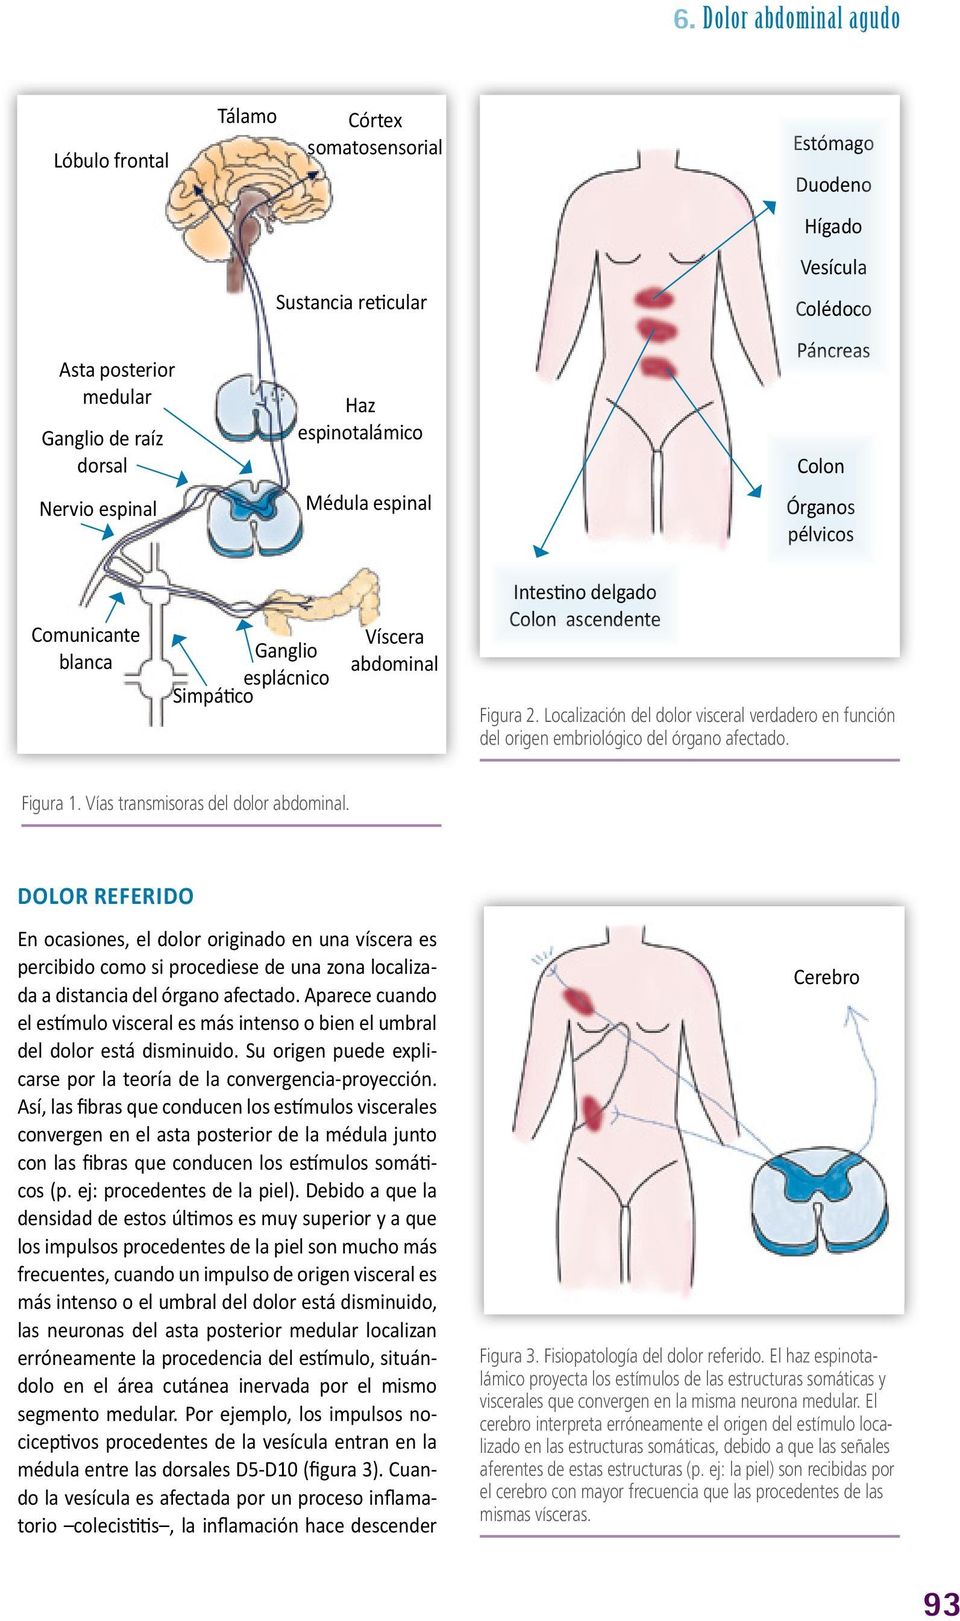 Localización del dolor visceral verdadero en función del origen embriológico del órgano afectado. Figura 1. Vías transmisoras del dolor abdominal.